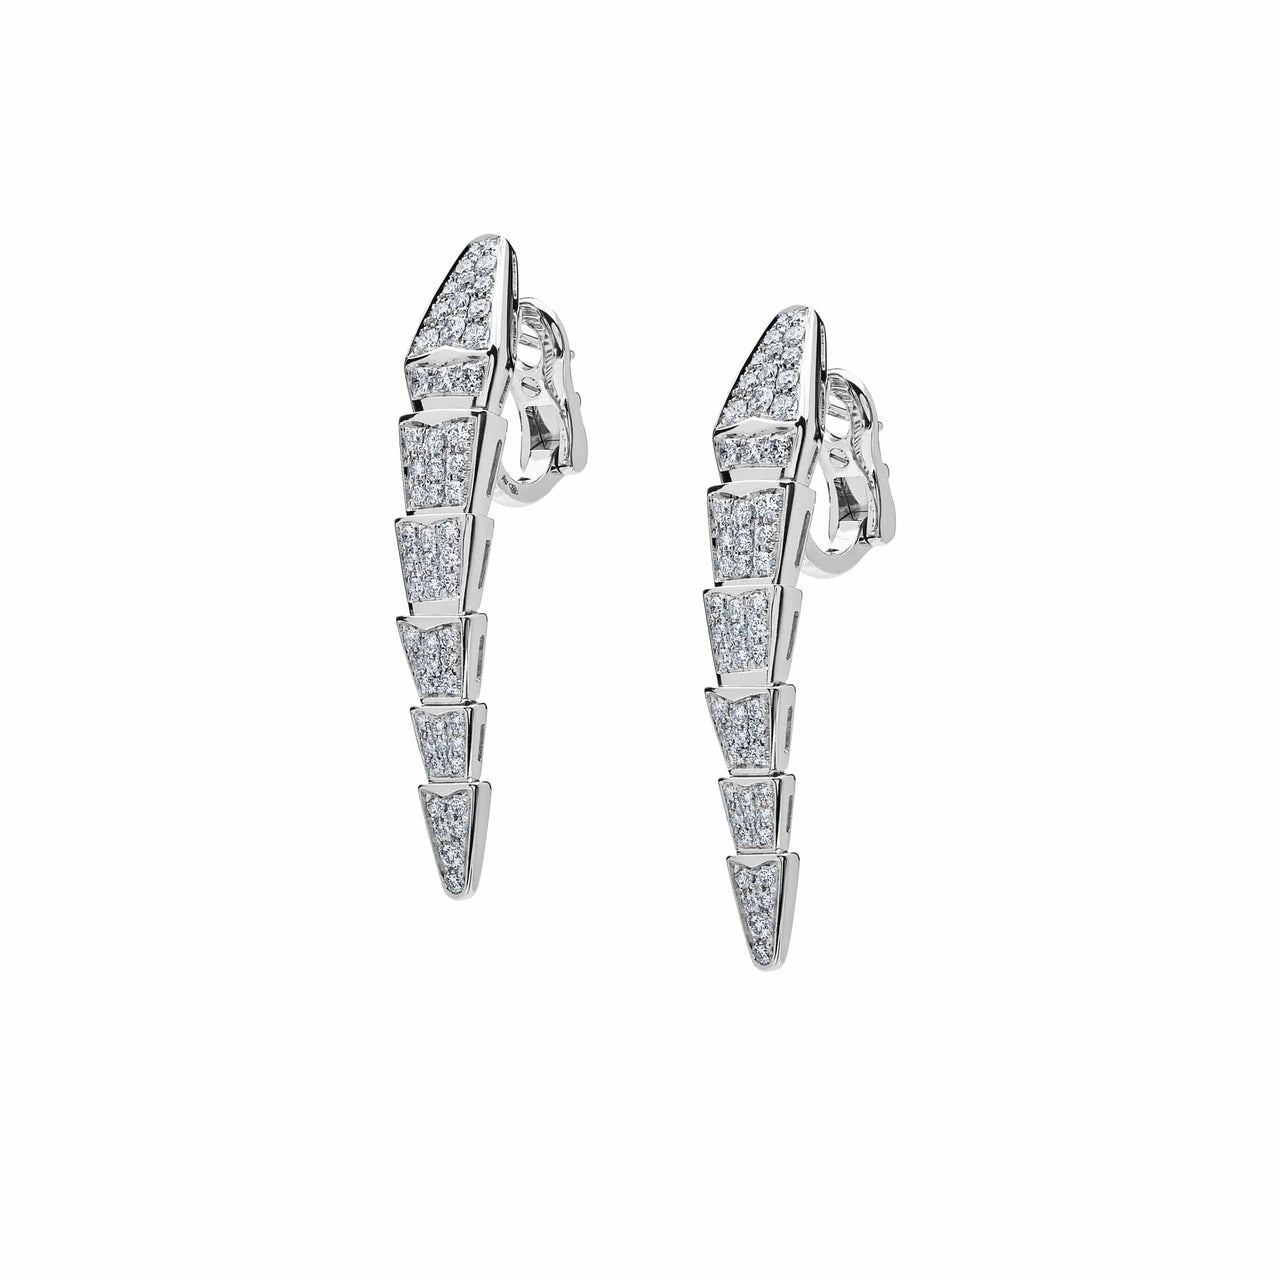 Bvlgari Serpenti Viper White Gold Diamond Earrings 348320 Wrist Aficionado